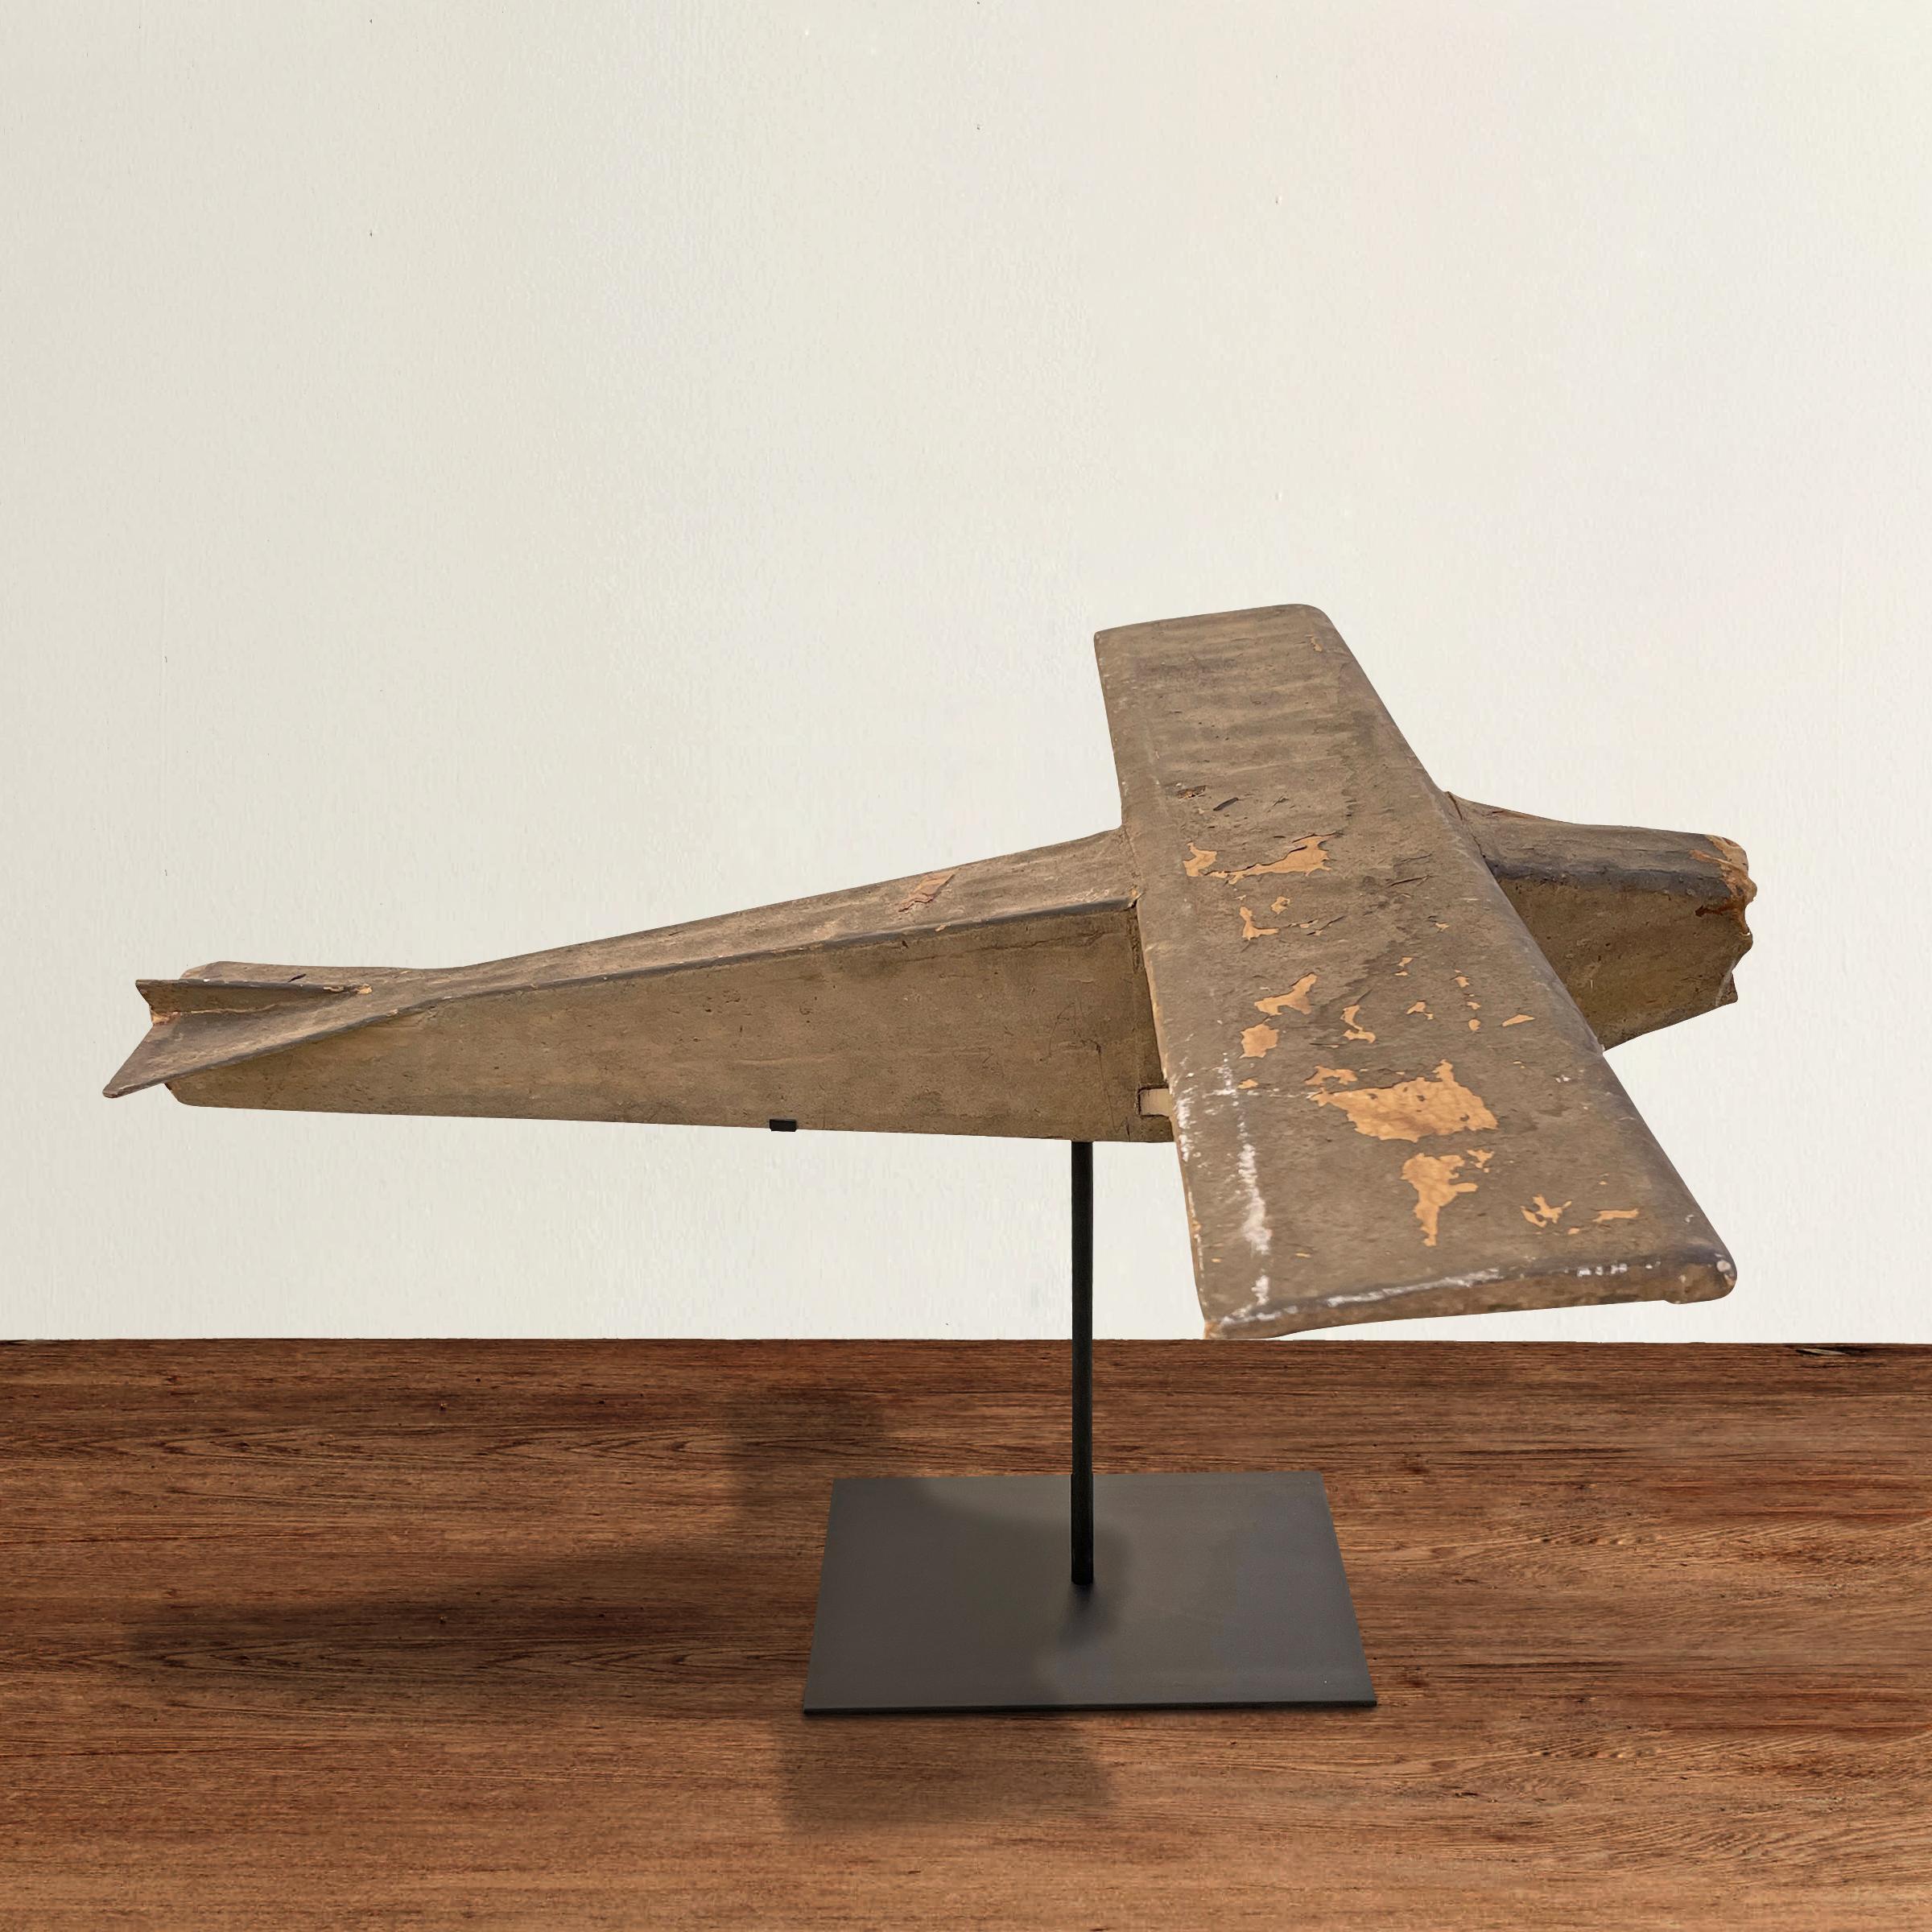 Une merveilleuse et charmante maquette d'avion de brousse américain du début du 20e siècle construite avec de la toile peinte tendue sur un squelette en bois, et montée sur un support en acier personnalisé.